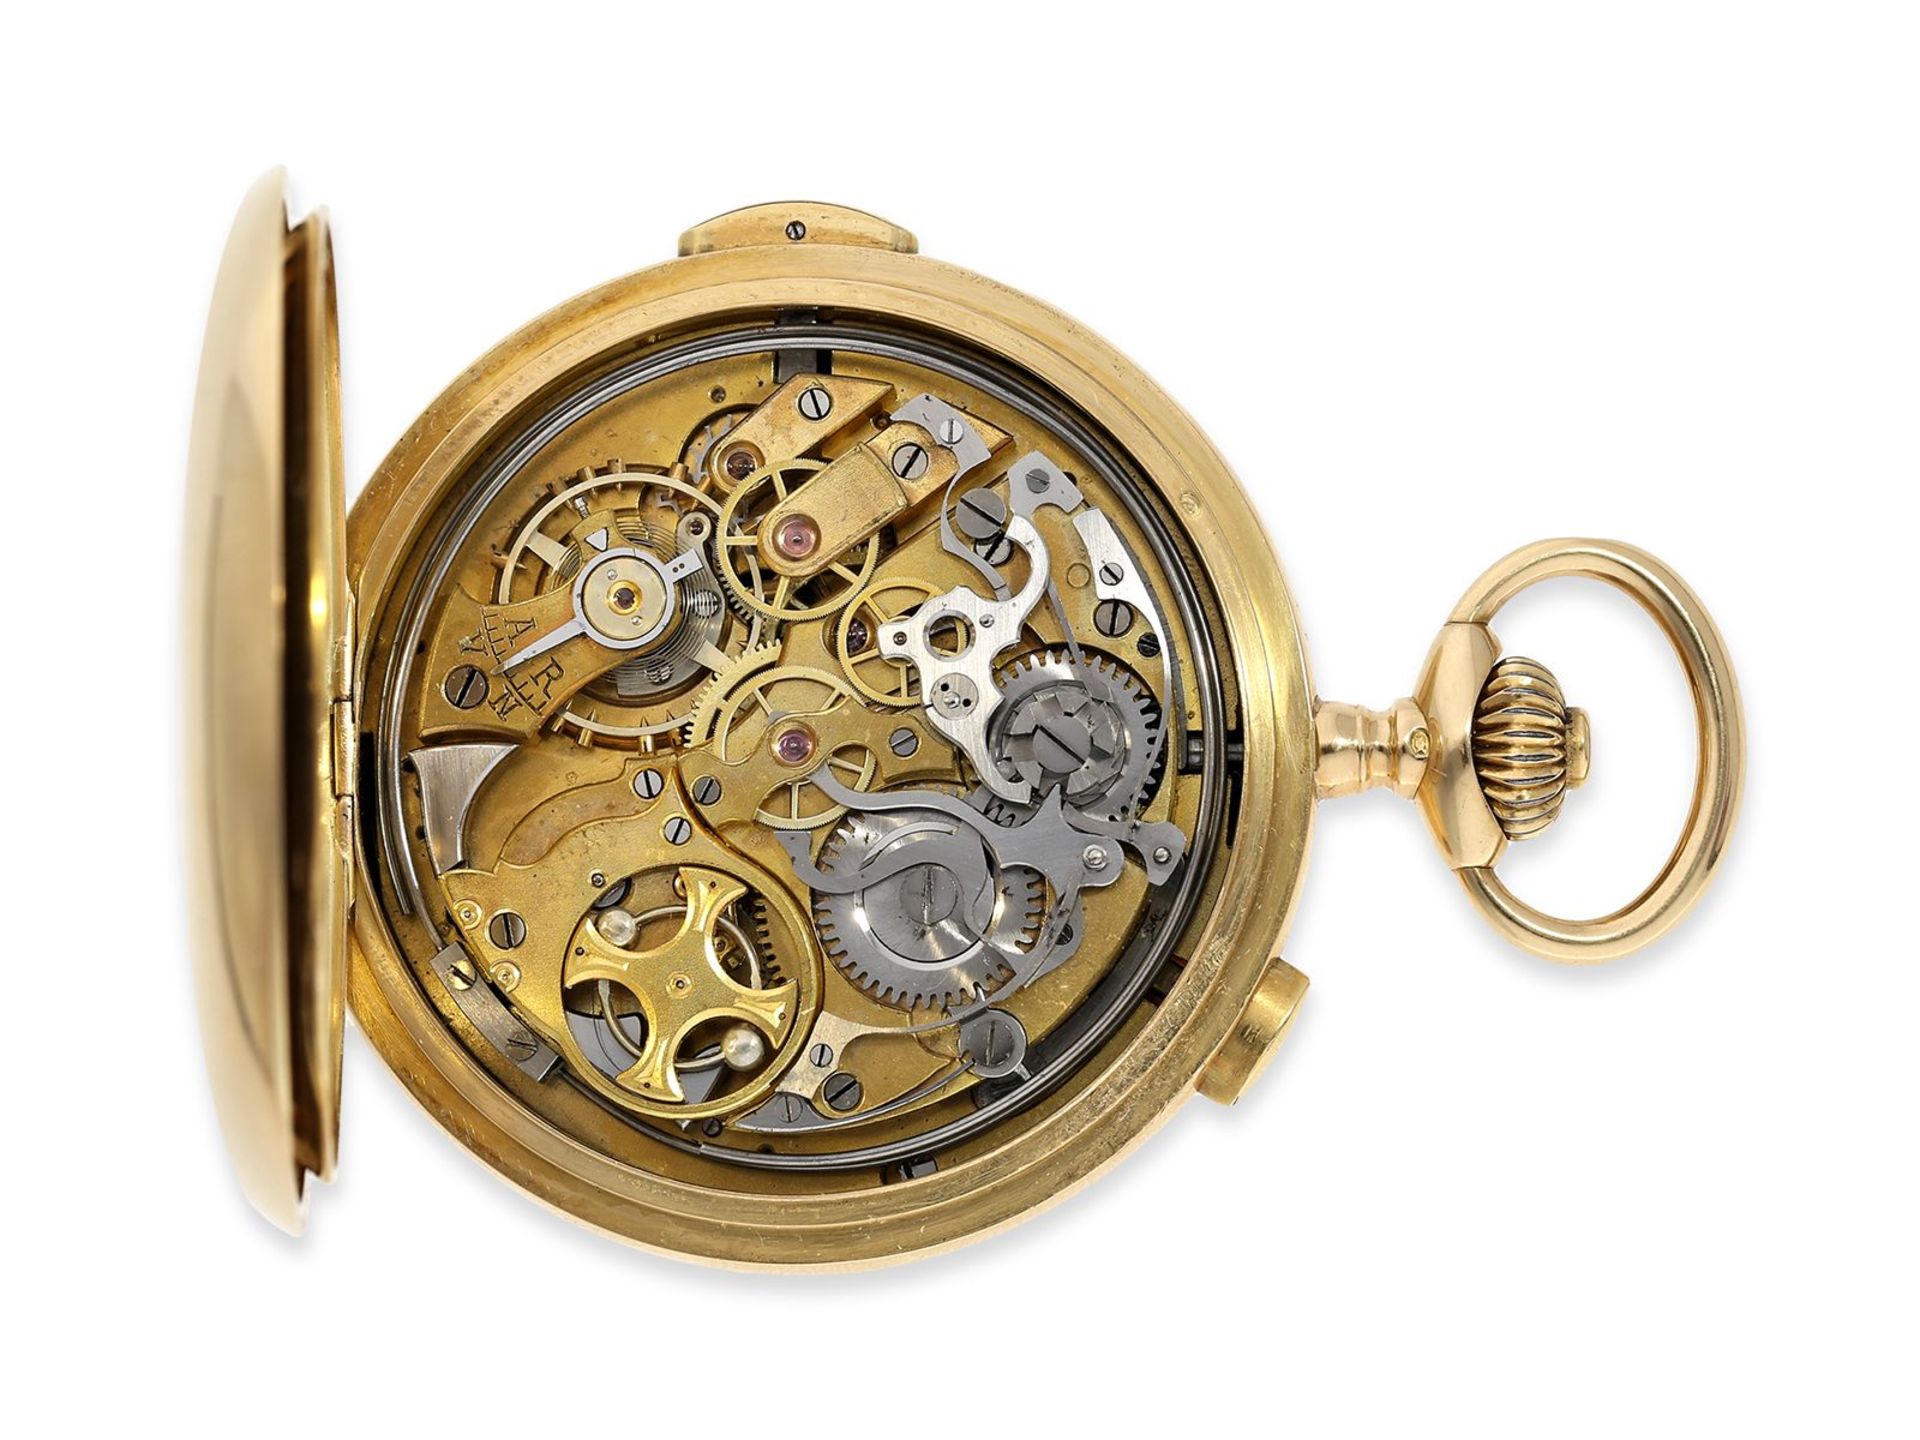 Taschenuhr: schwere rotgoldene Savonnette mit Repetition und Chronograph, 18K Gold, signiert Horloge - Image 7 of 12